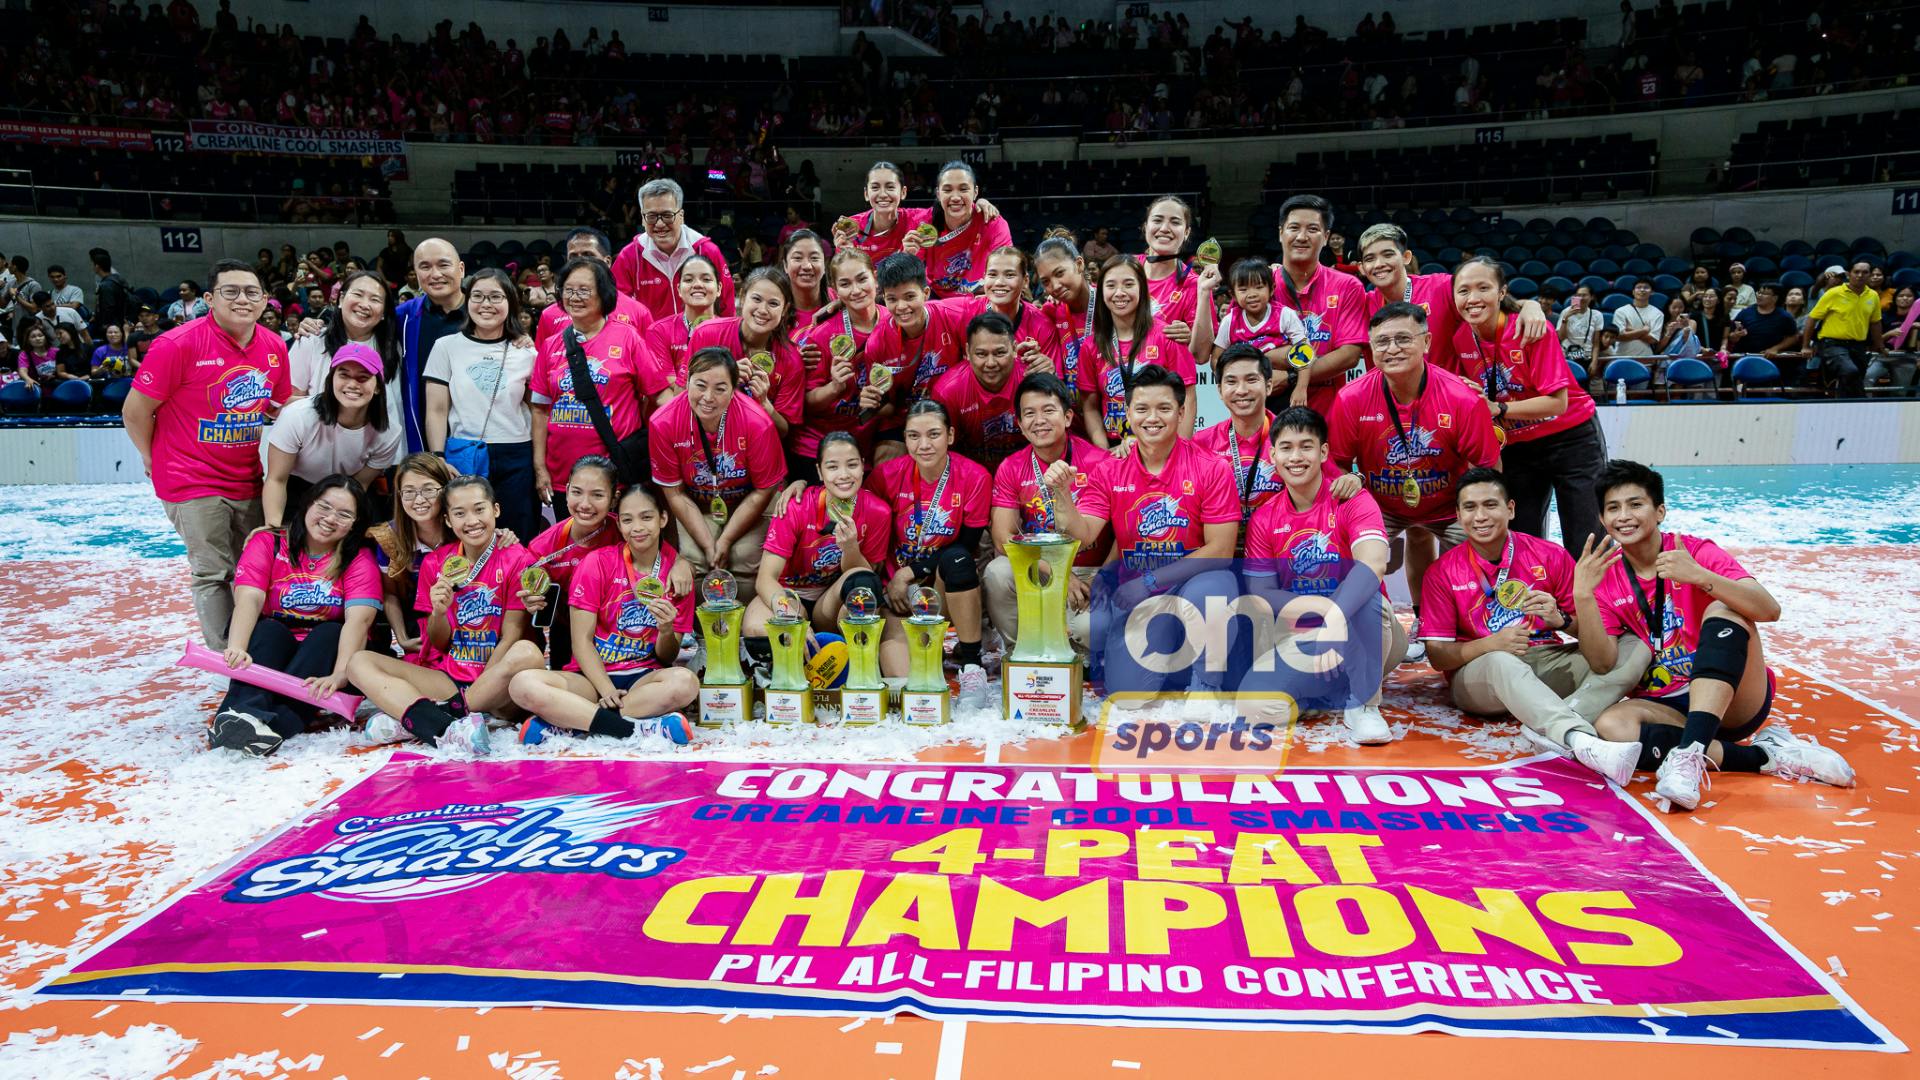 Jema Galanza, Creamline win five-set classic over Choco Mucho to retain PVL All-Filipino Championship